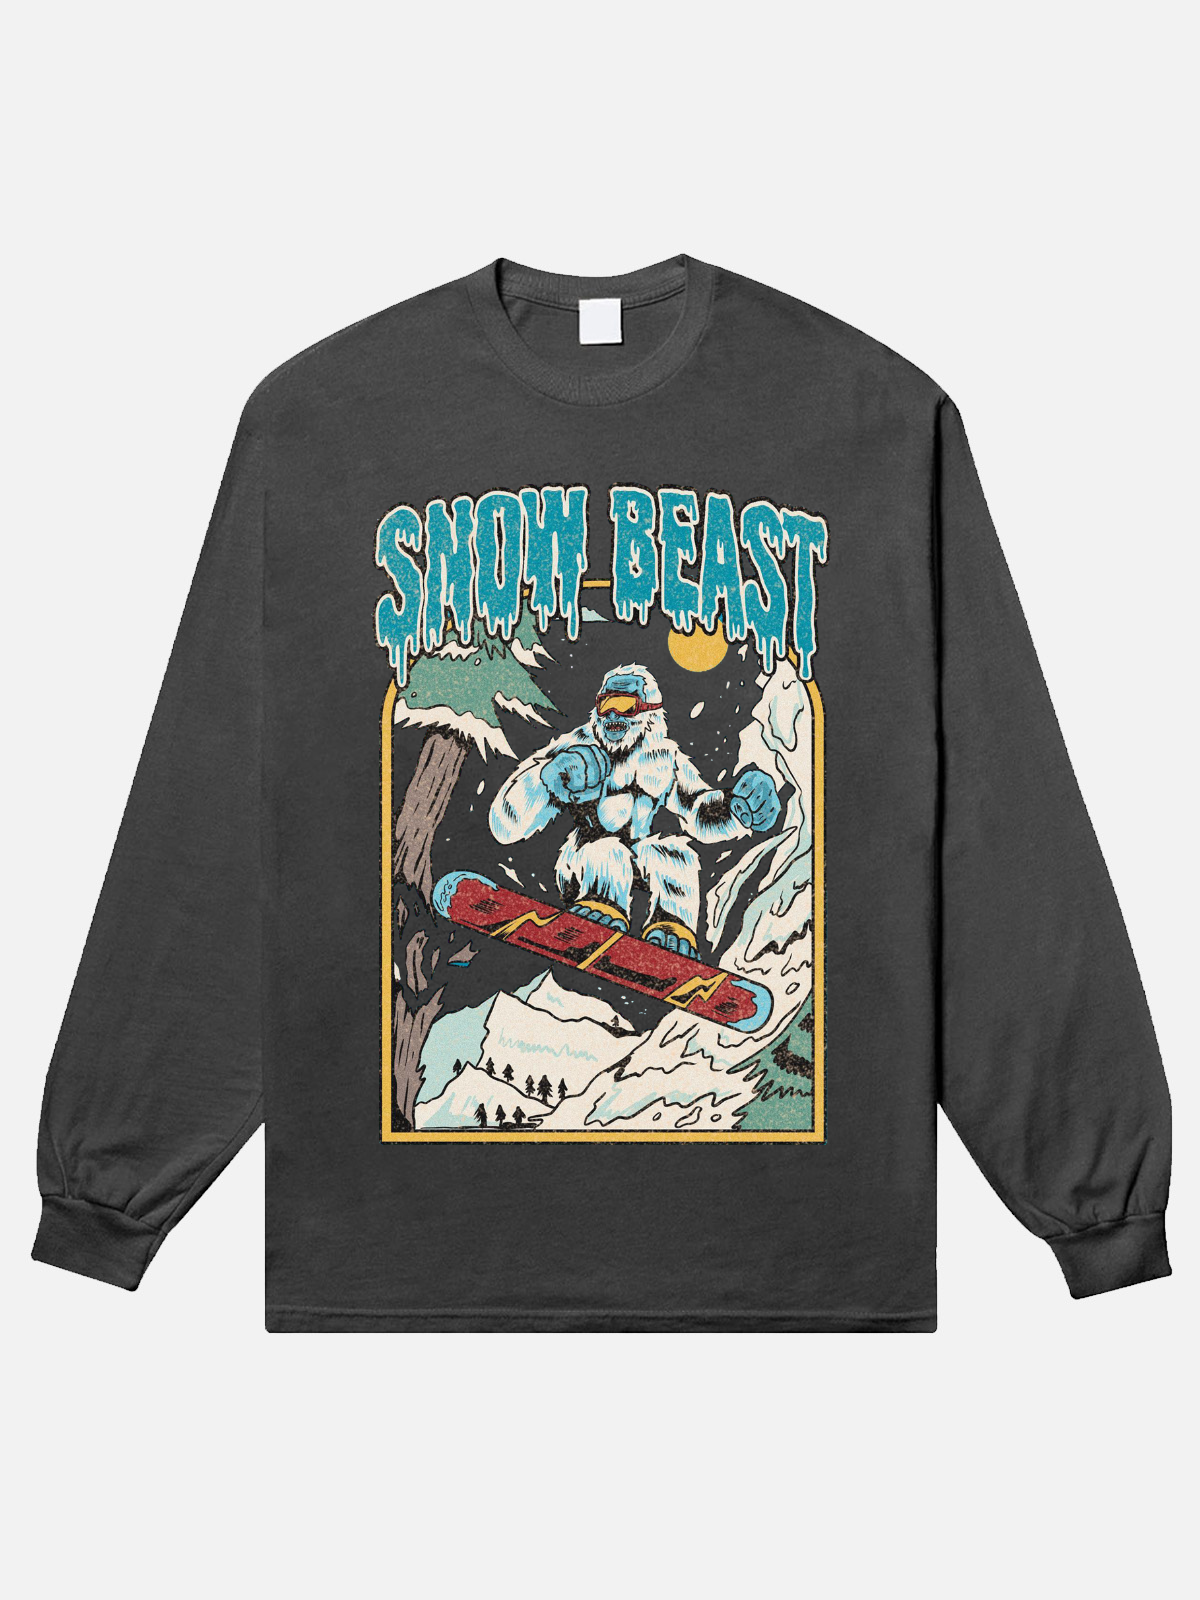 Snow Best Long Sleeve T-Shirt